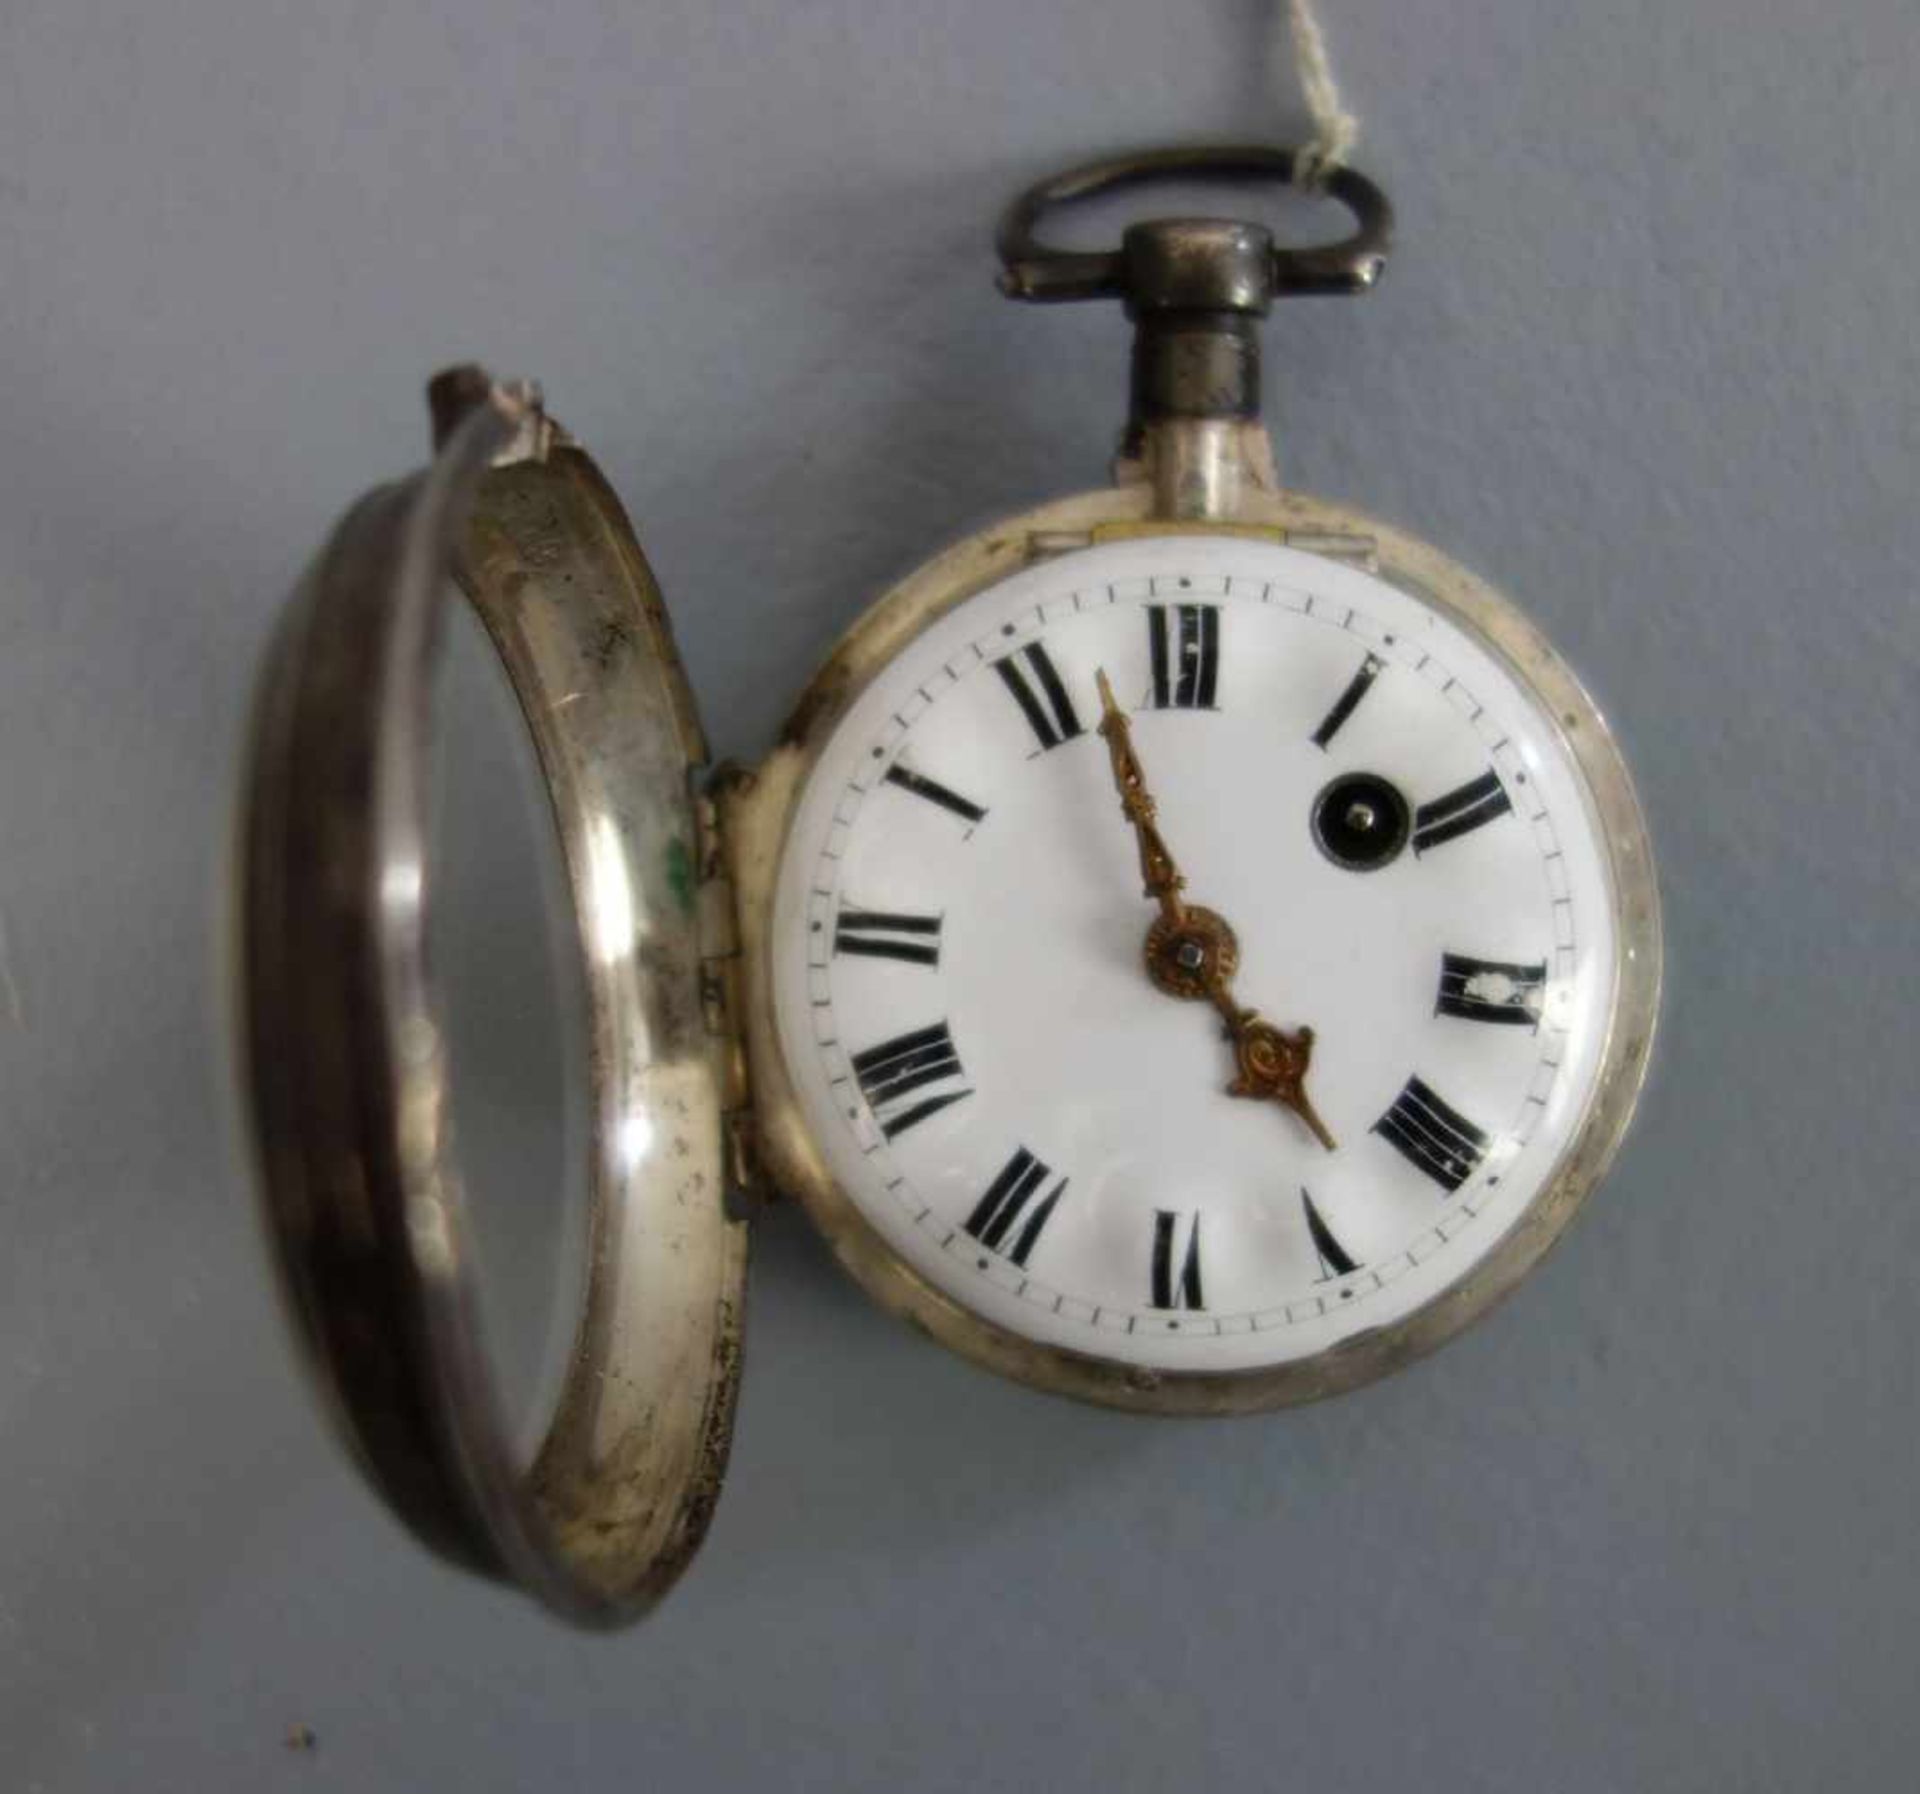 SPINDELTASCHENUHR / pocket watch, 2. Hälfte 19. Jh., offene Form, Silbergehäuse mit Acrylglas. - Image 3 of 3